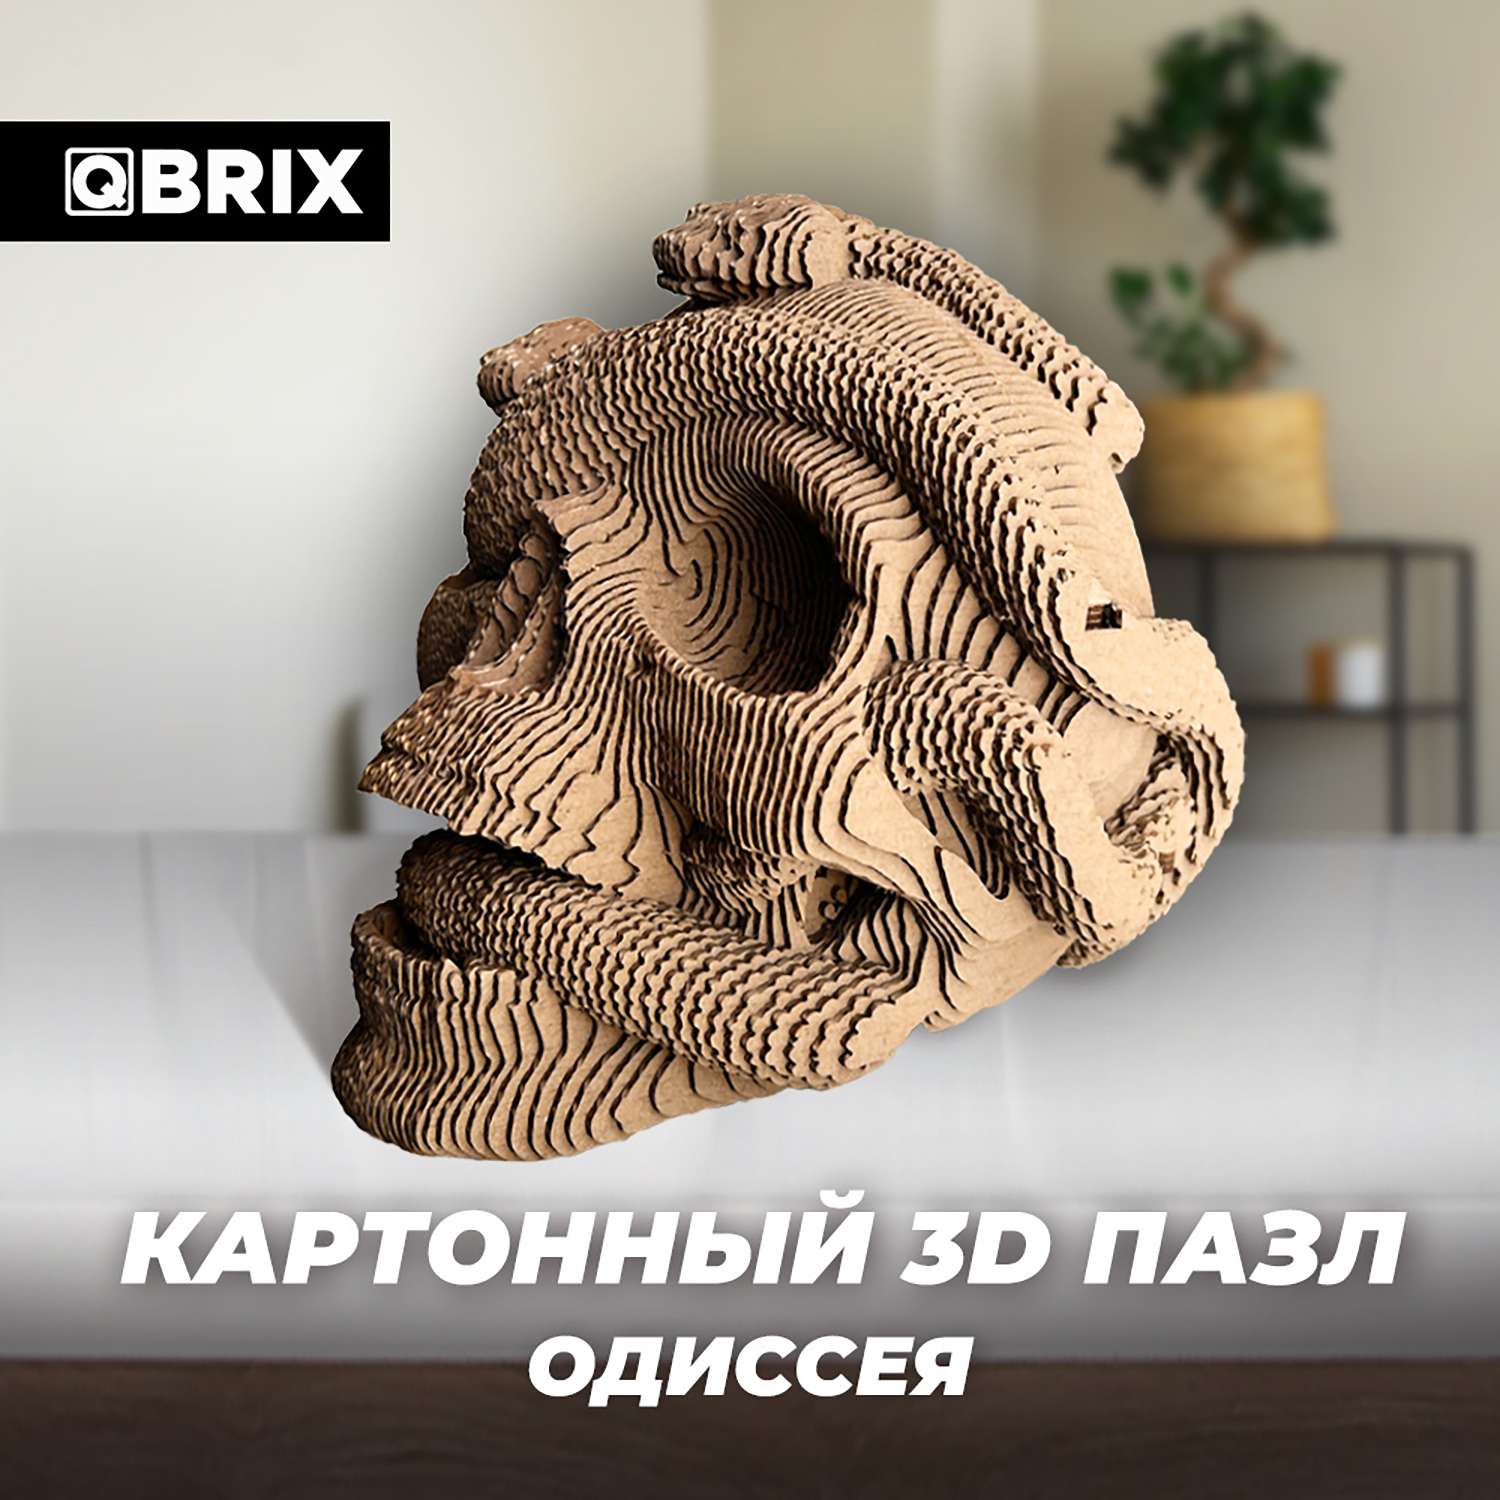 Конструктор QBRIX 3D картонный Одиссея 20020 20020 - фото 6